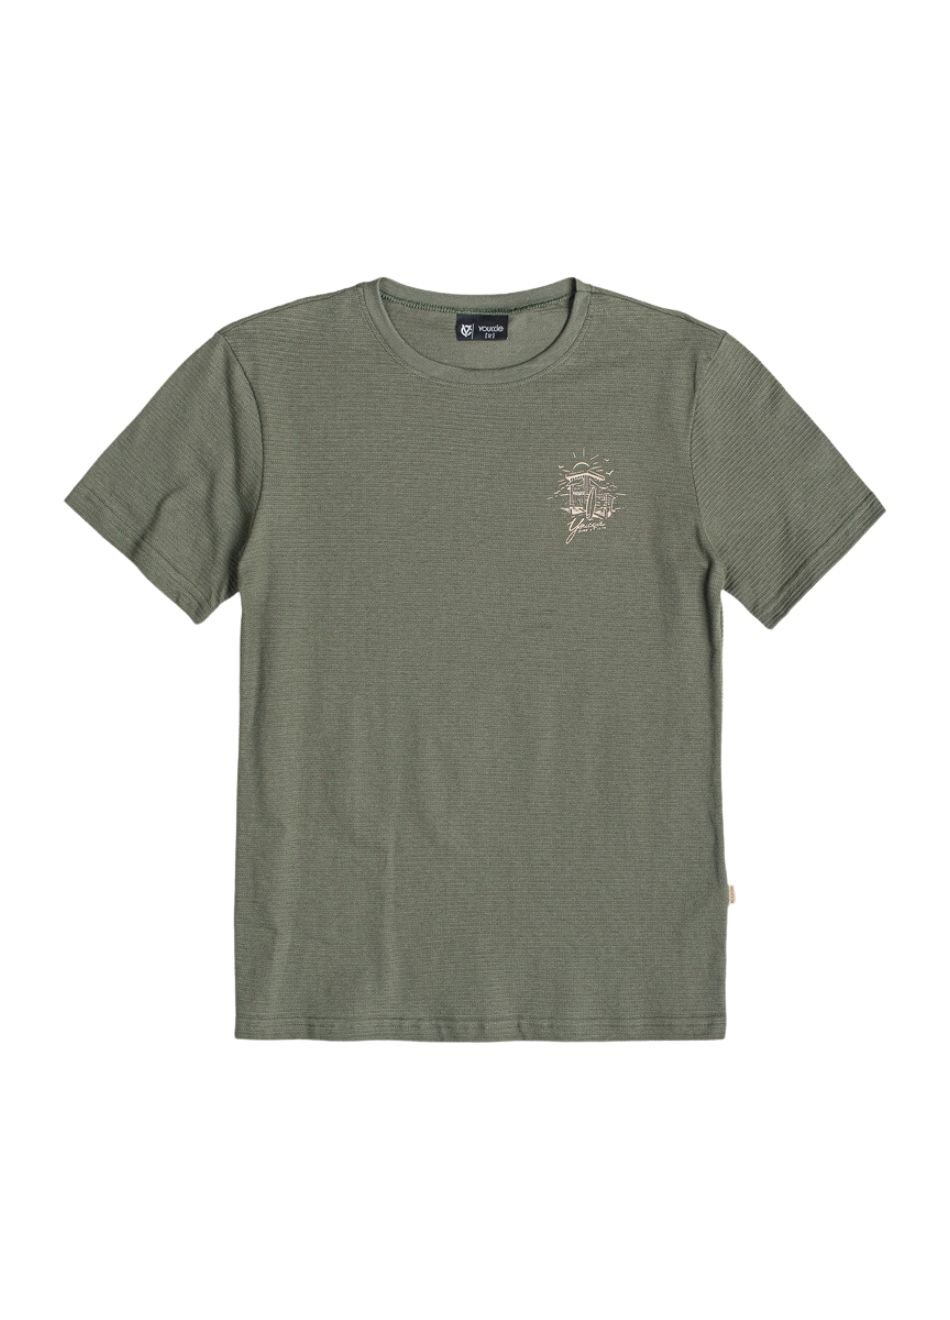 Camiseta Youccie Infantil Surf Verde Militar